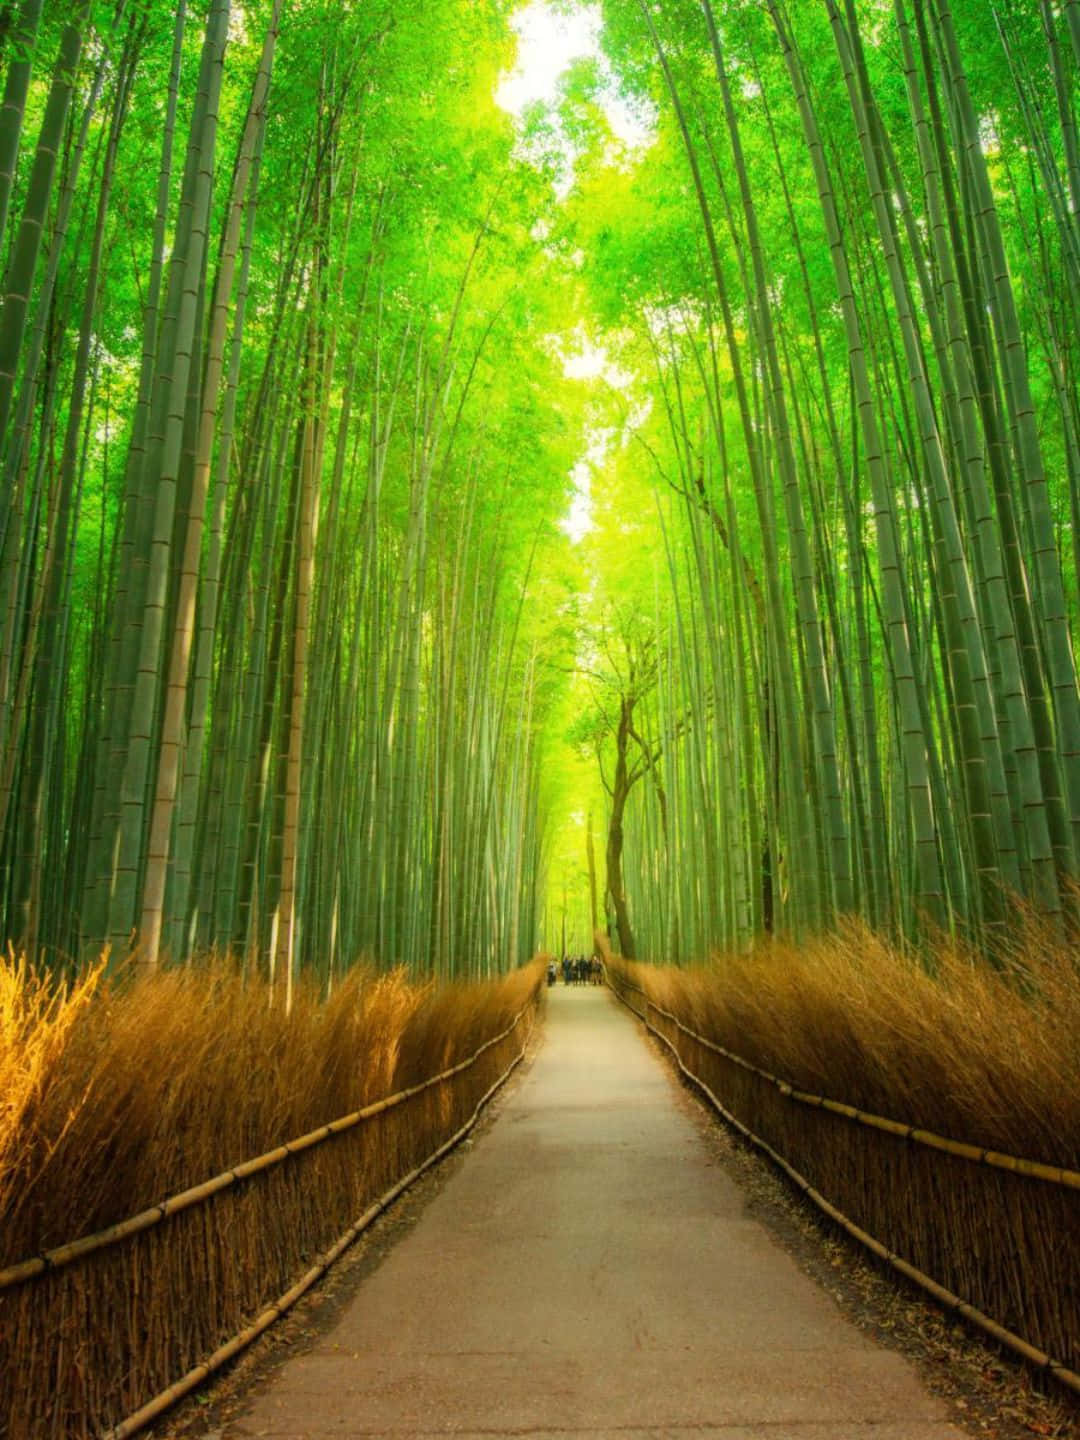 Fondode Pantalla De Bambú En 1440p, Camino Claro Entre Los Árboles De Bambú.